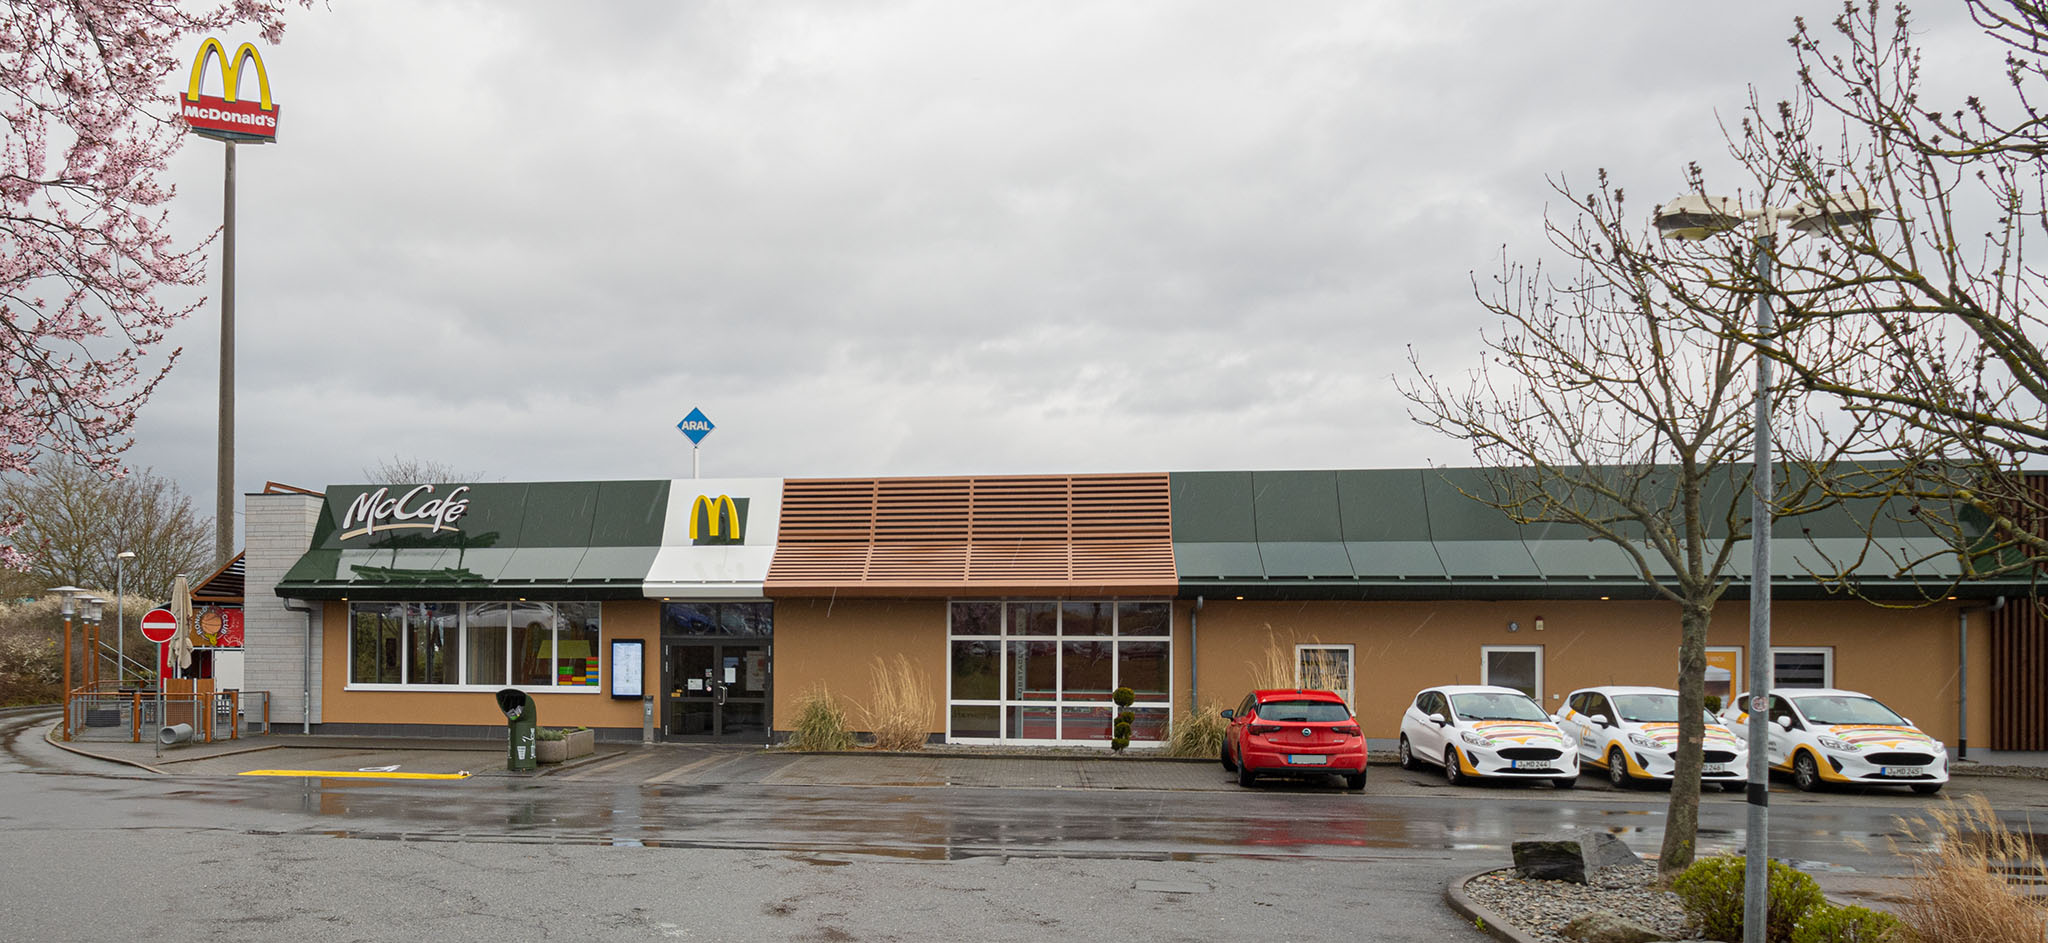 Das McDonald’s-Restaurant in Jena (Amsterdamer Straße)